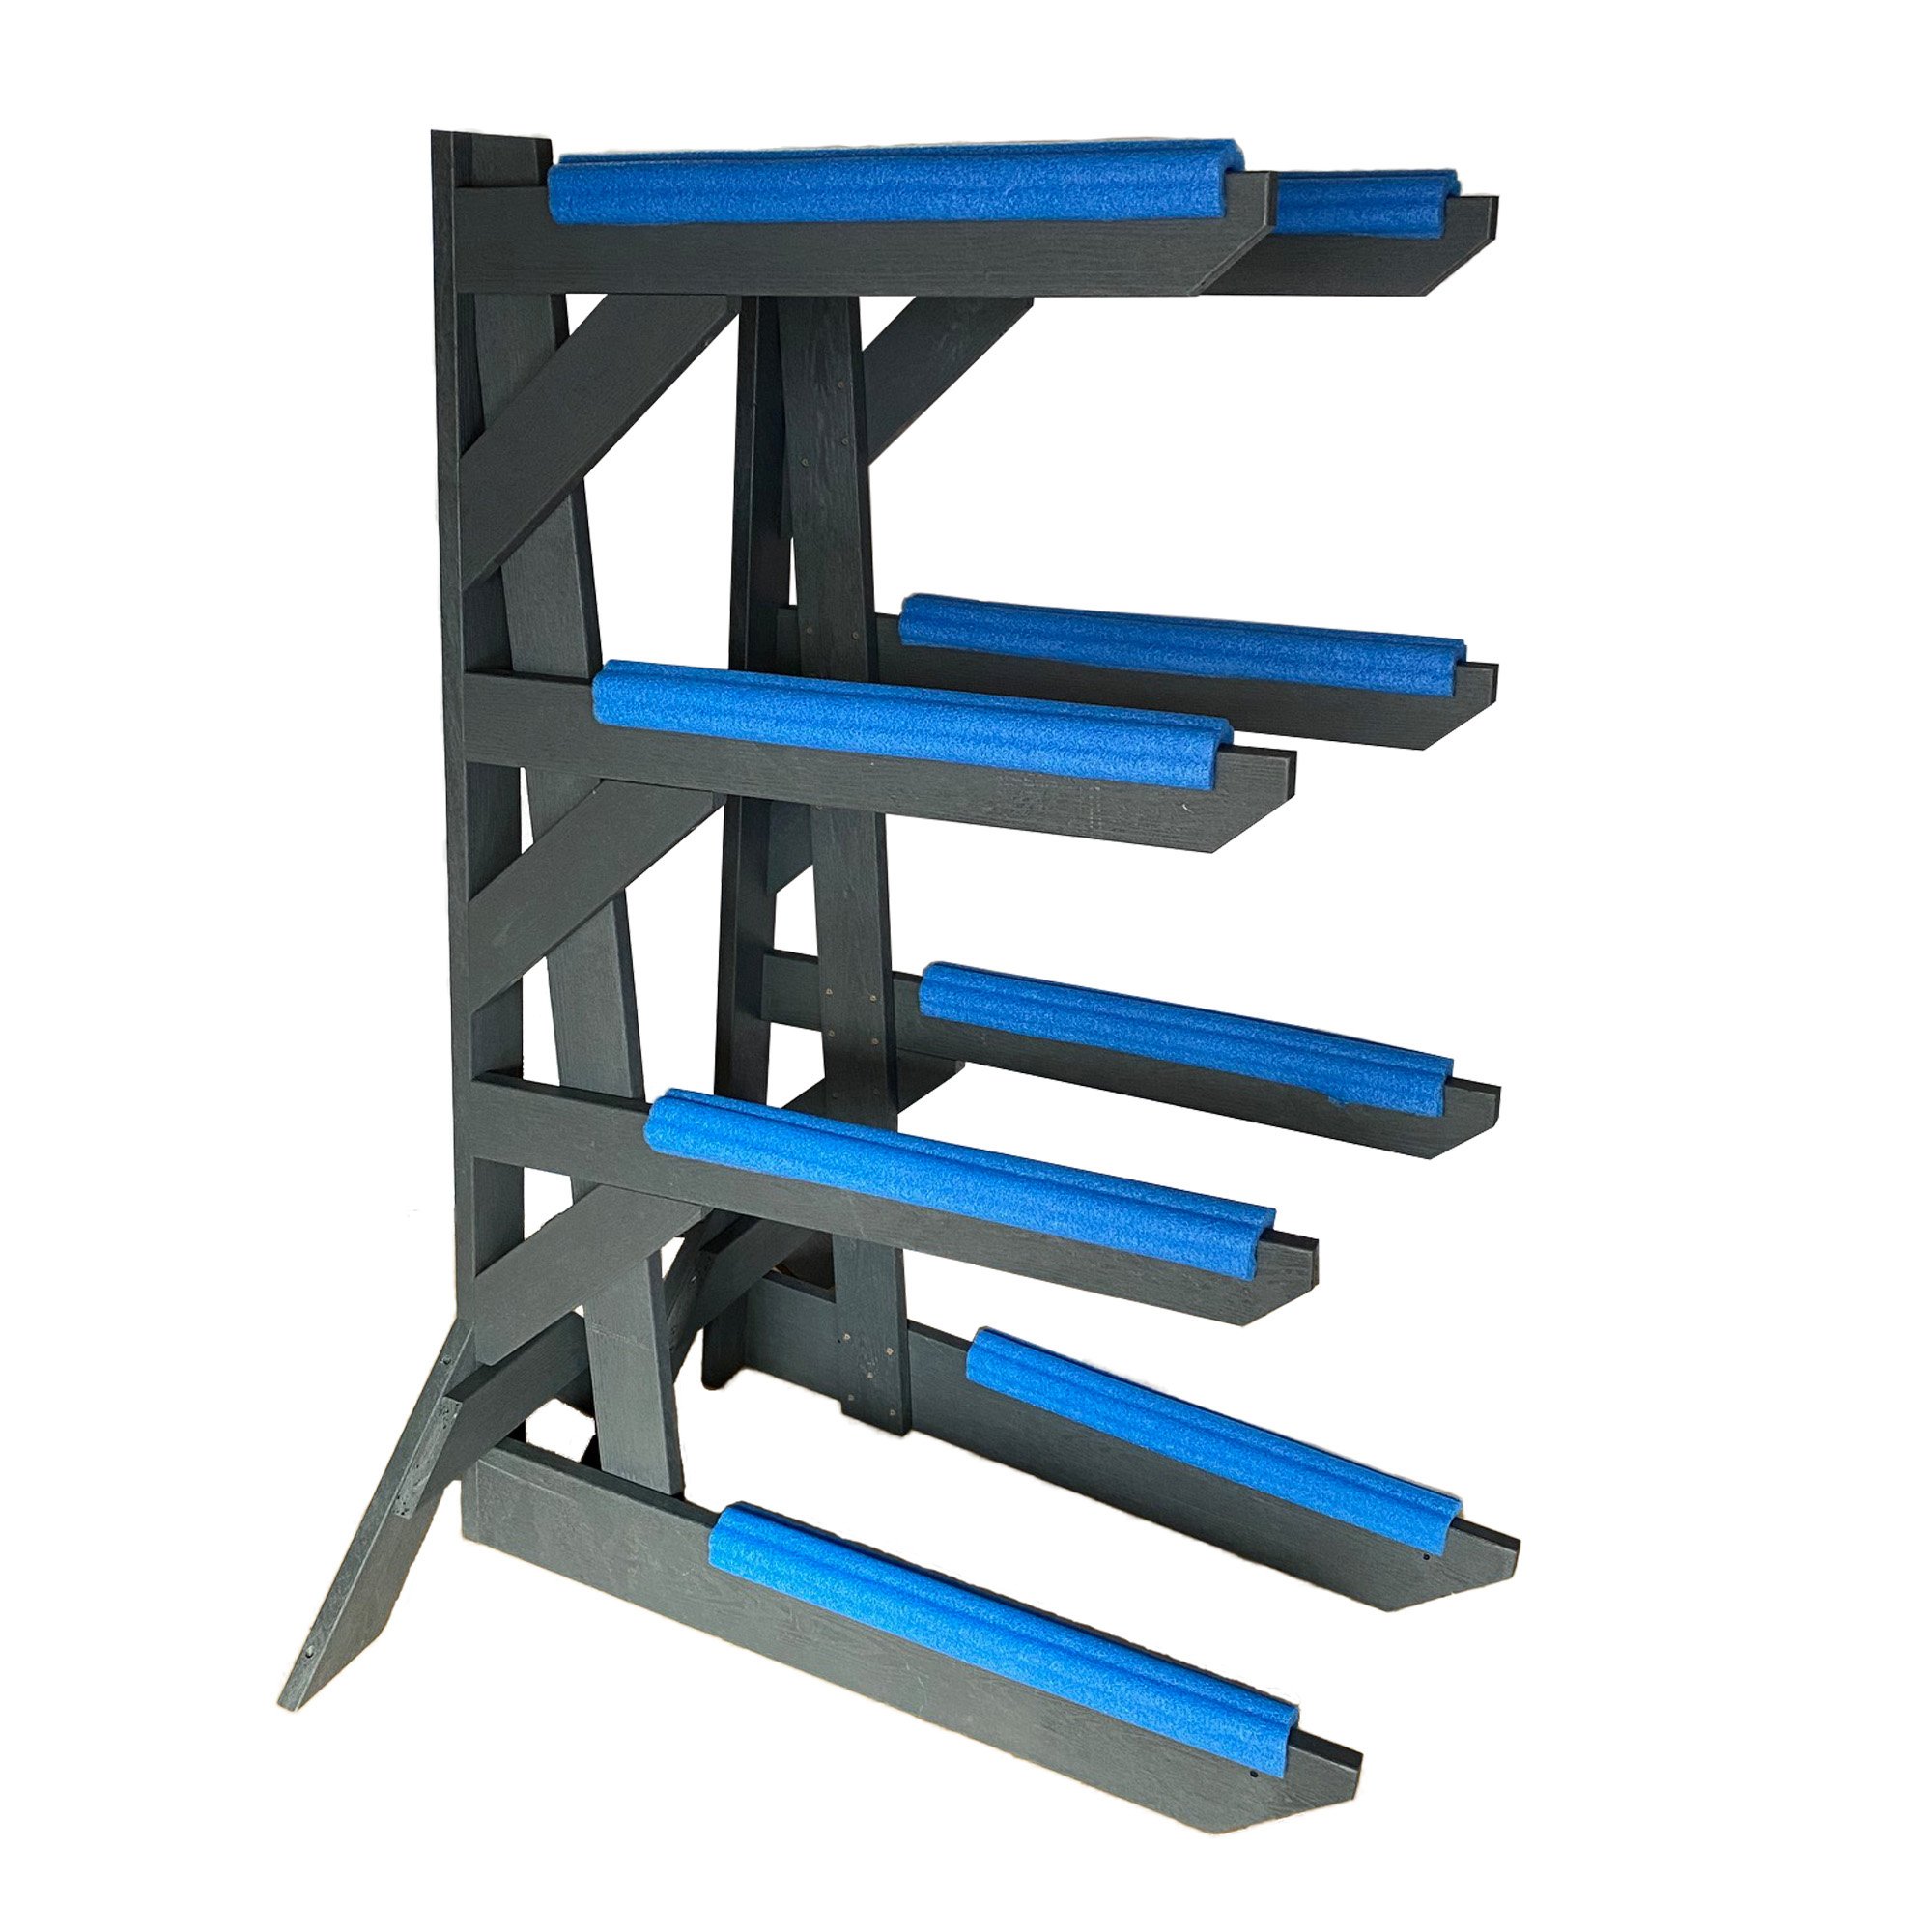 4 rack - storage rack solutions.jpg